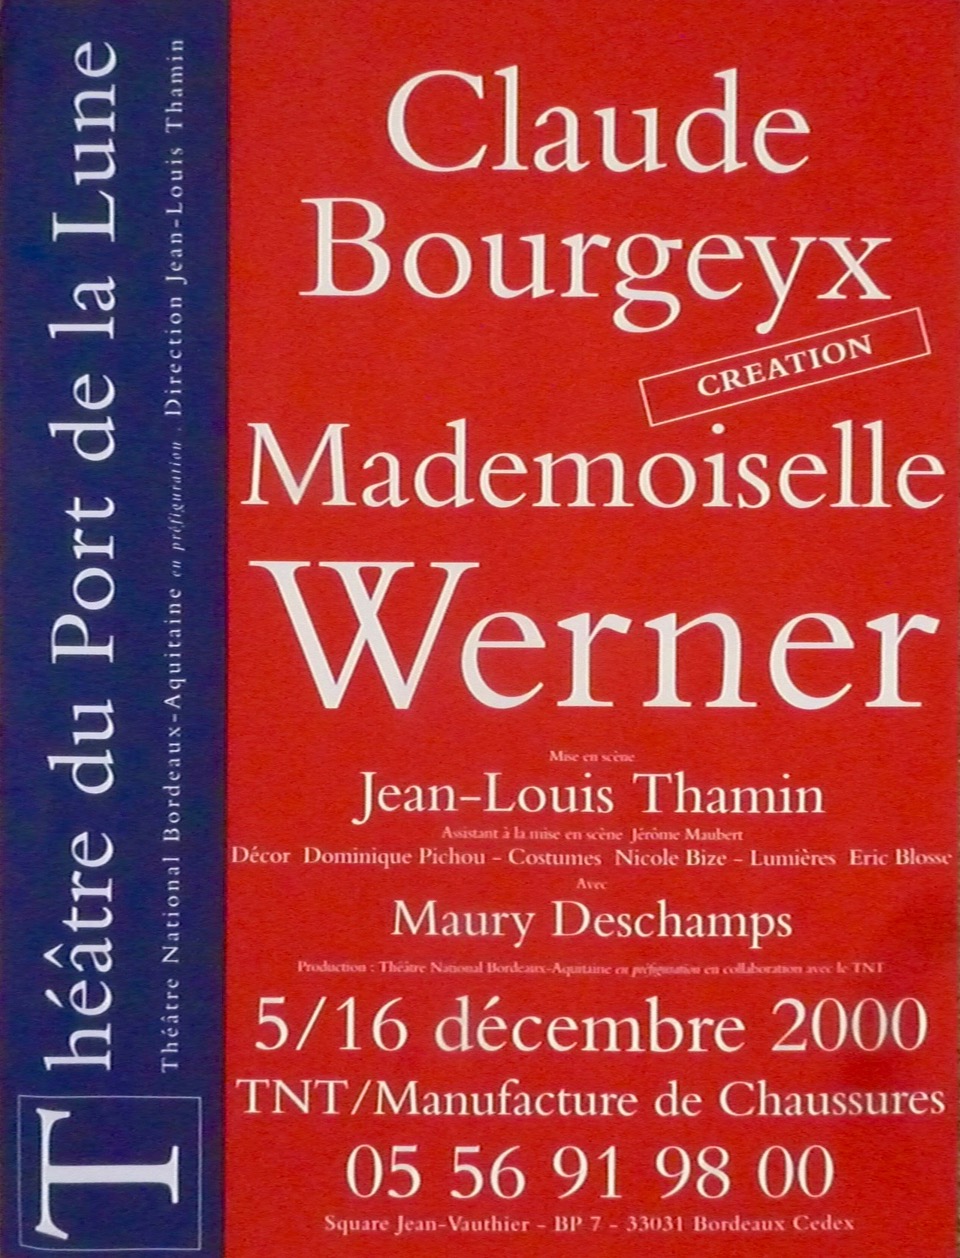 mademoiselle-werner-bourgeyx